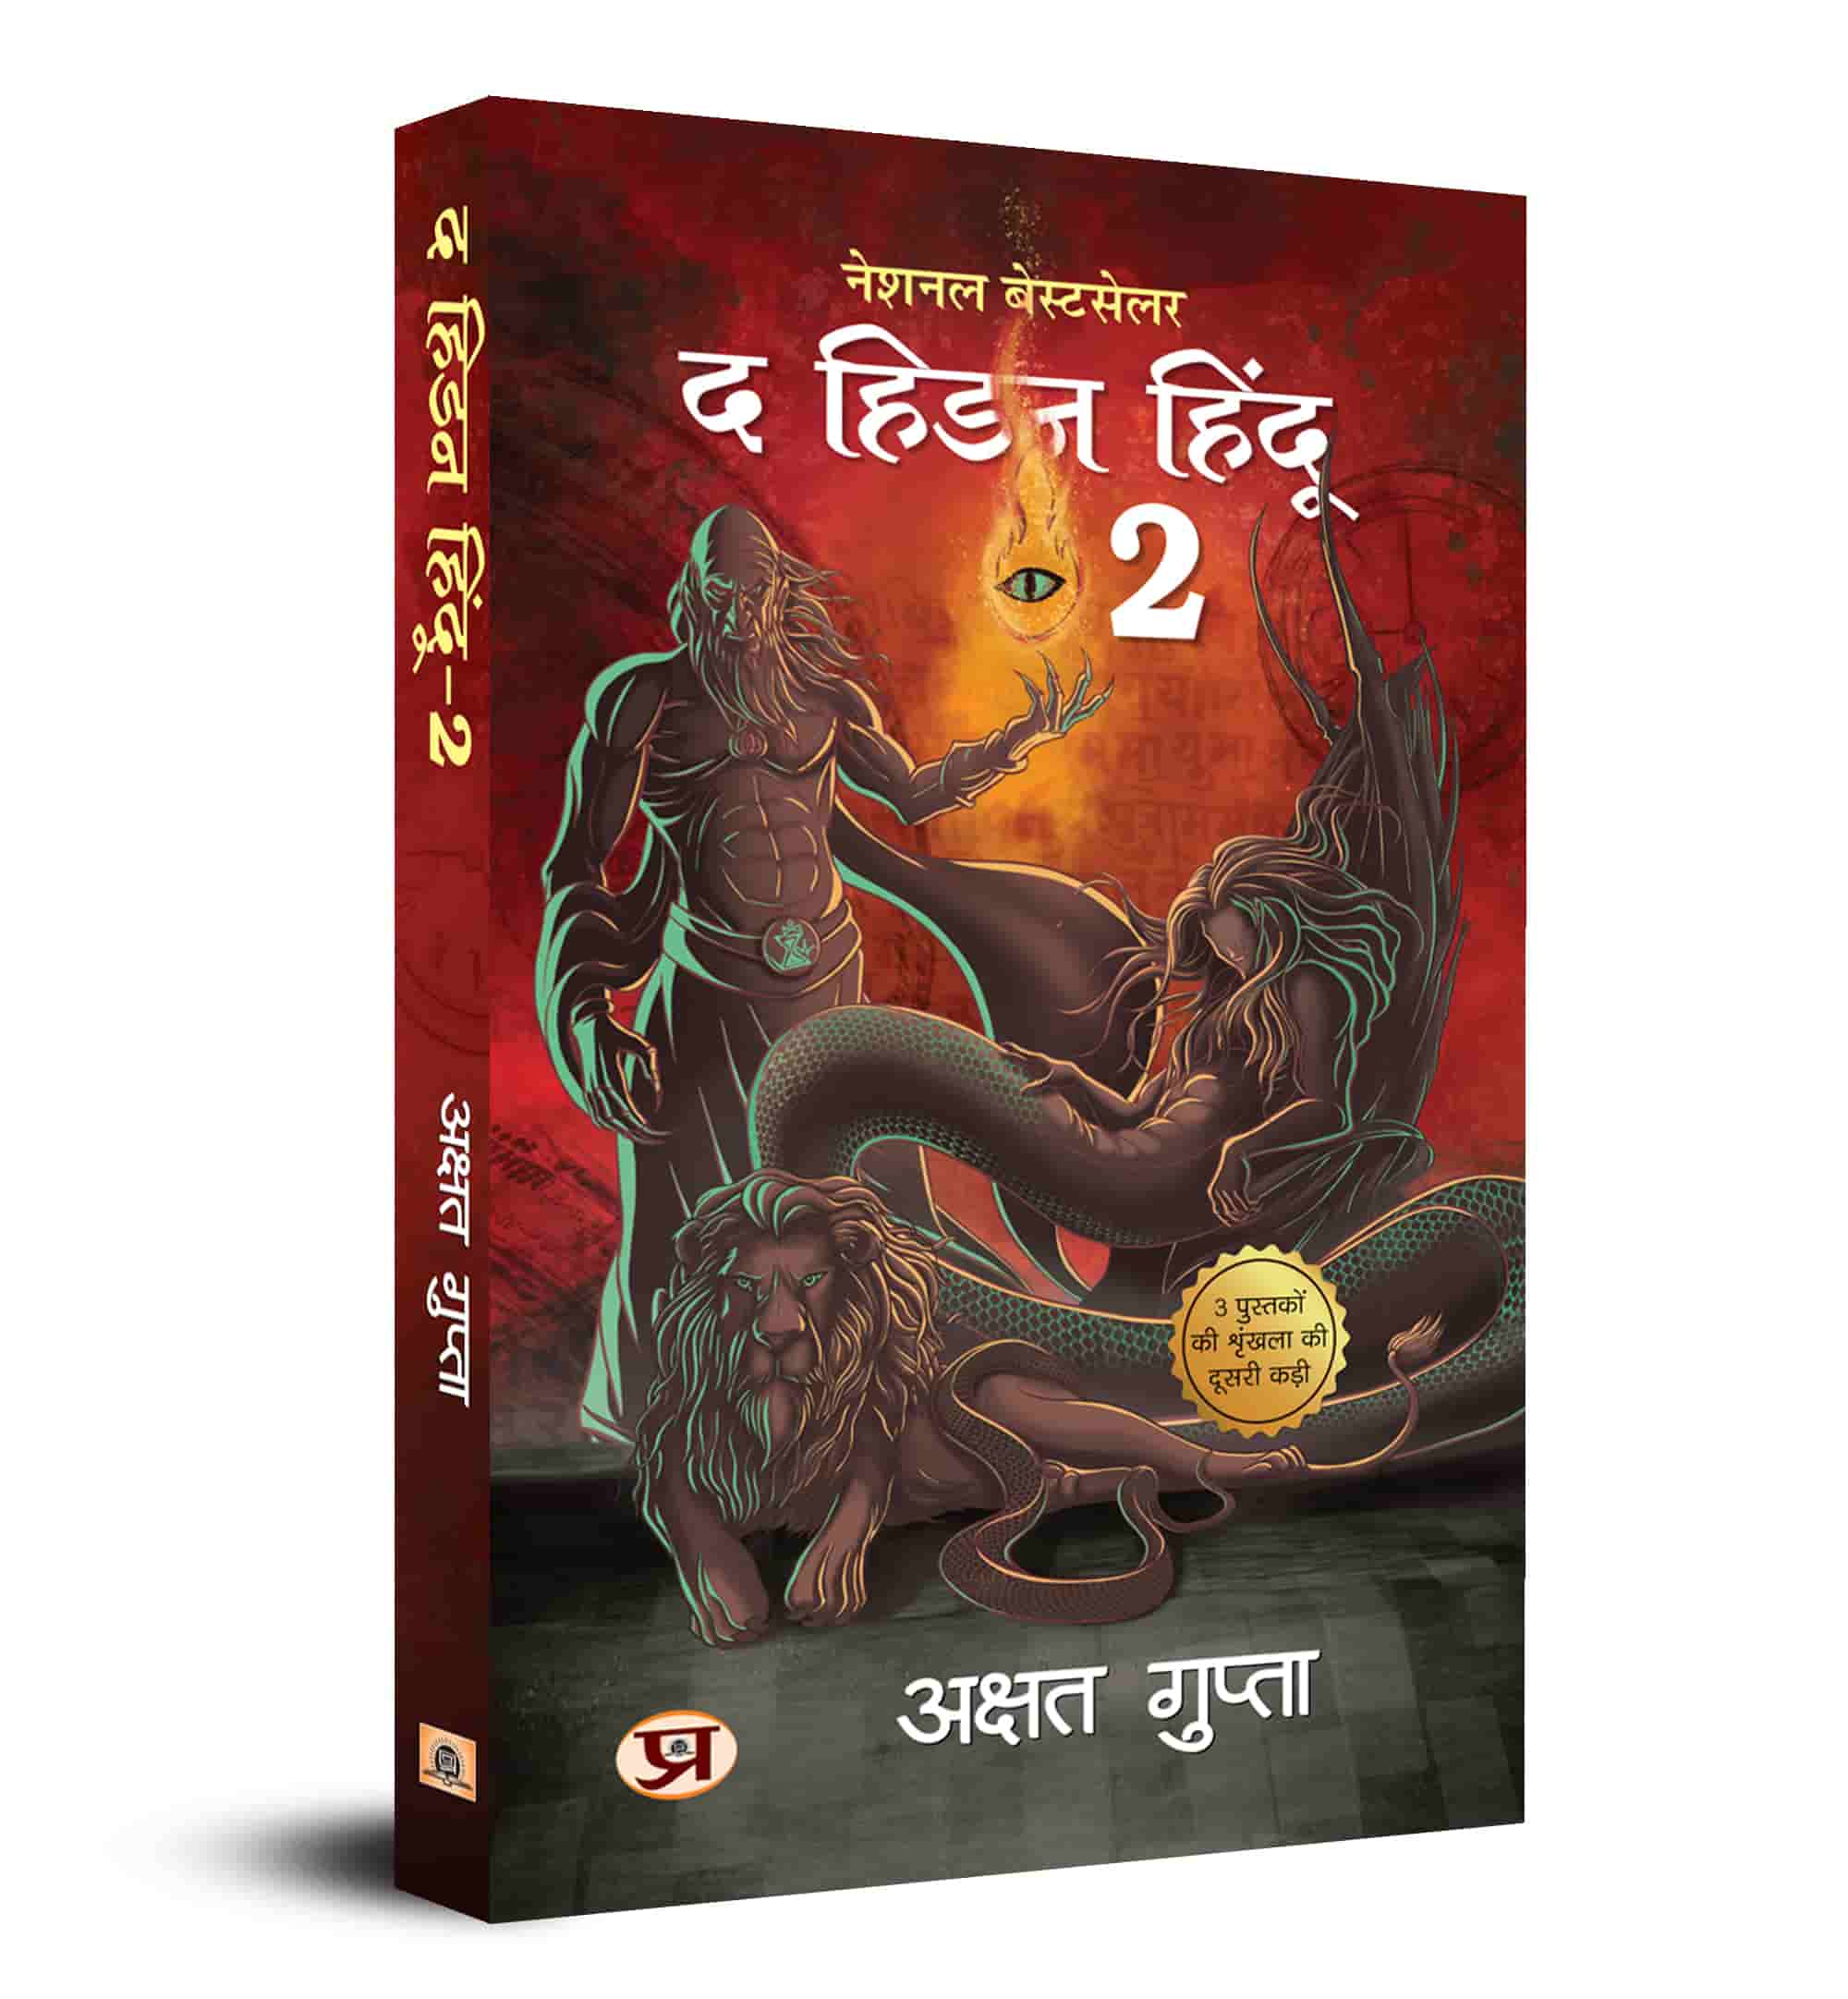 The Hidden Hindu Book 2 